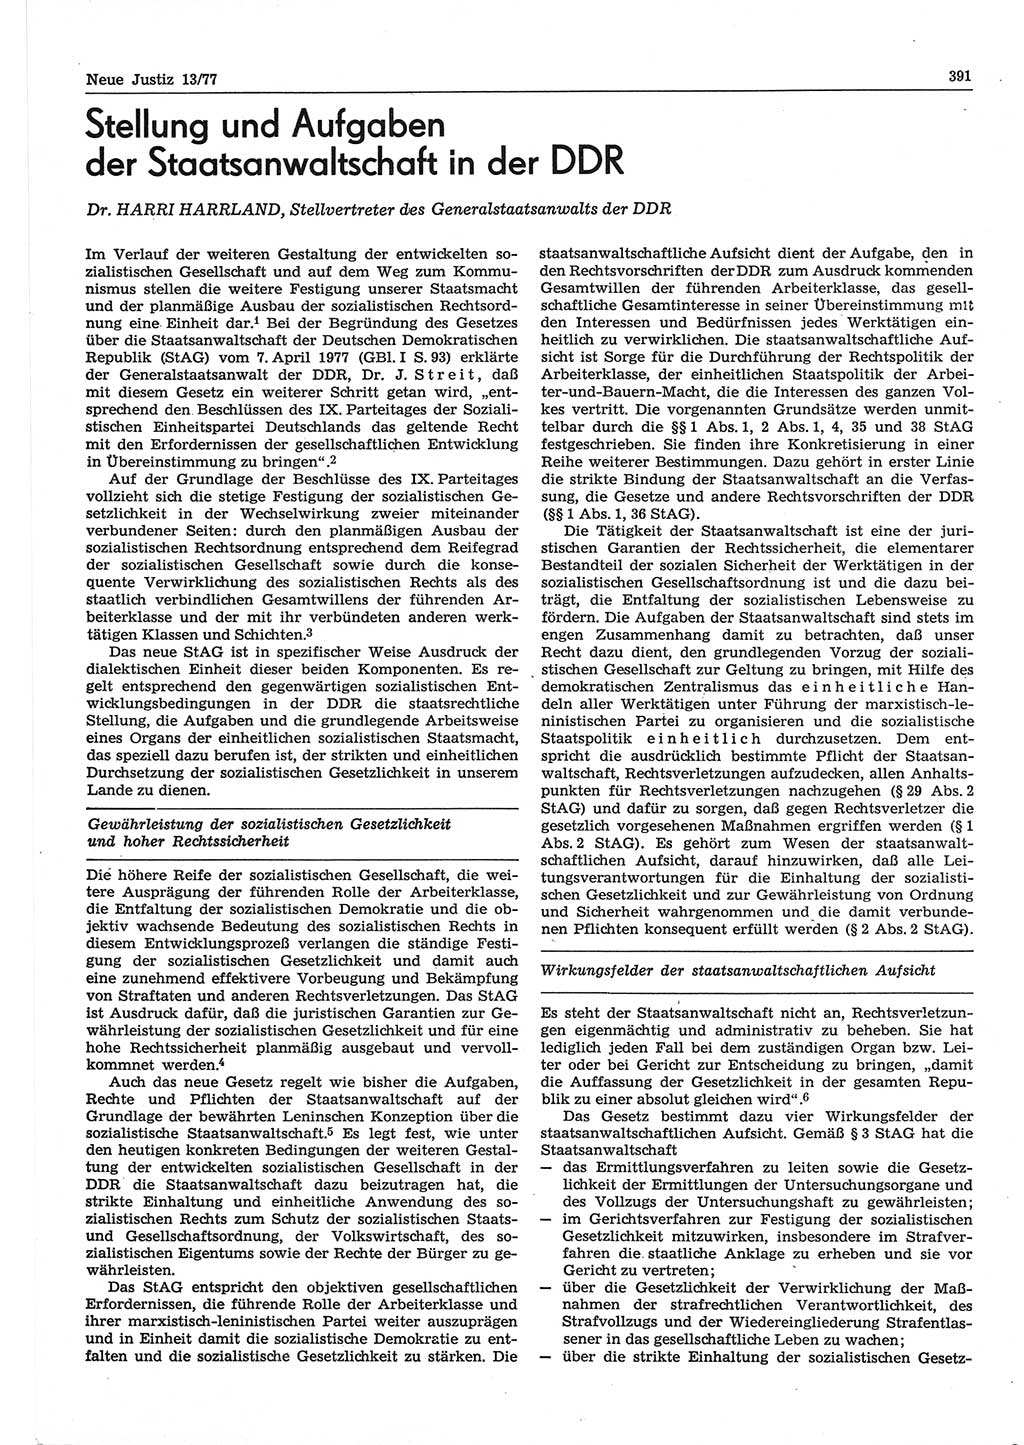 Neue Justiz (NJ), Zeitschrift für Recht und Rechtswissenschaft-Zeitschrift, sozialistisches Recht und Gesetzlichkeit, 31. Jahrgang 1977, Seite 391 (NJ DDR 1977, S. 391)